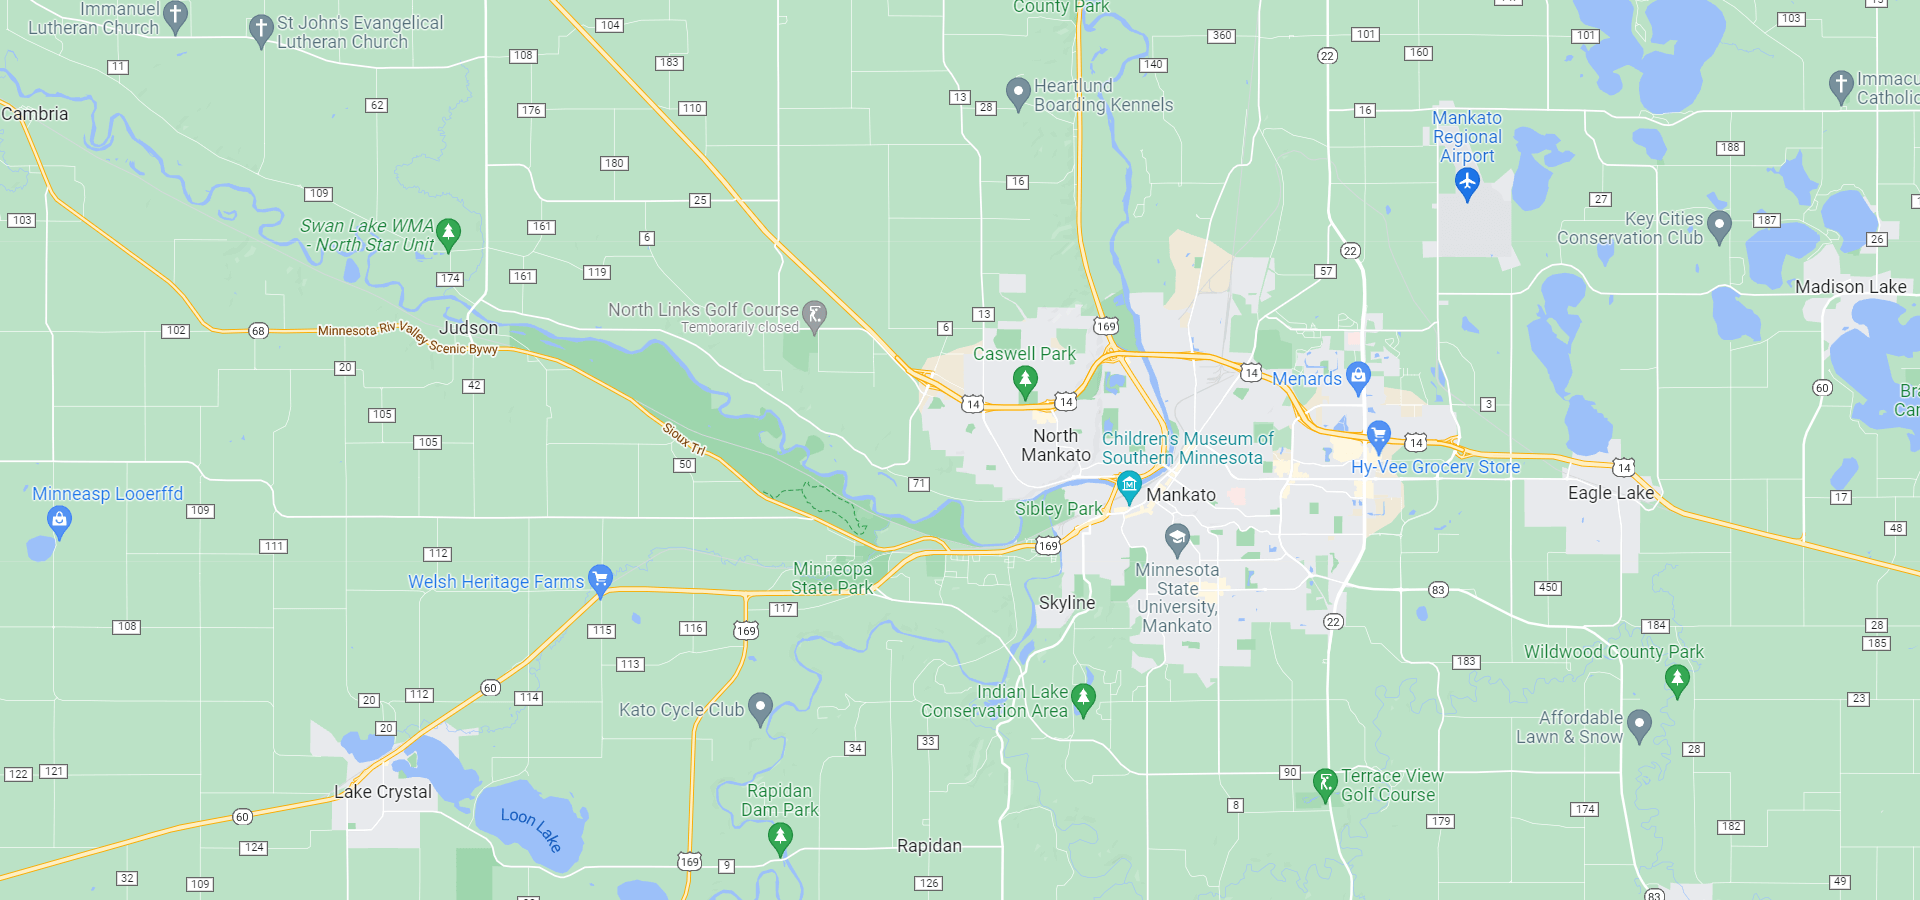 Mankato, Minnesota area map in color